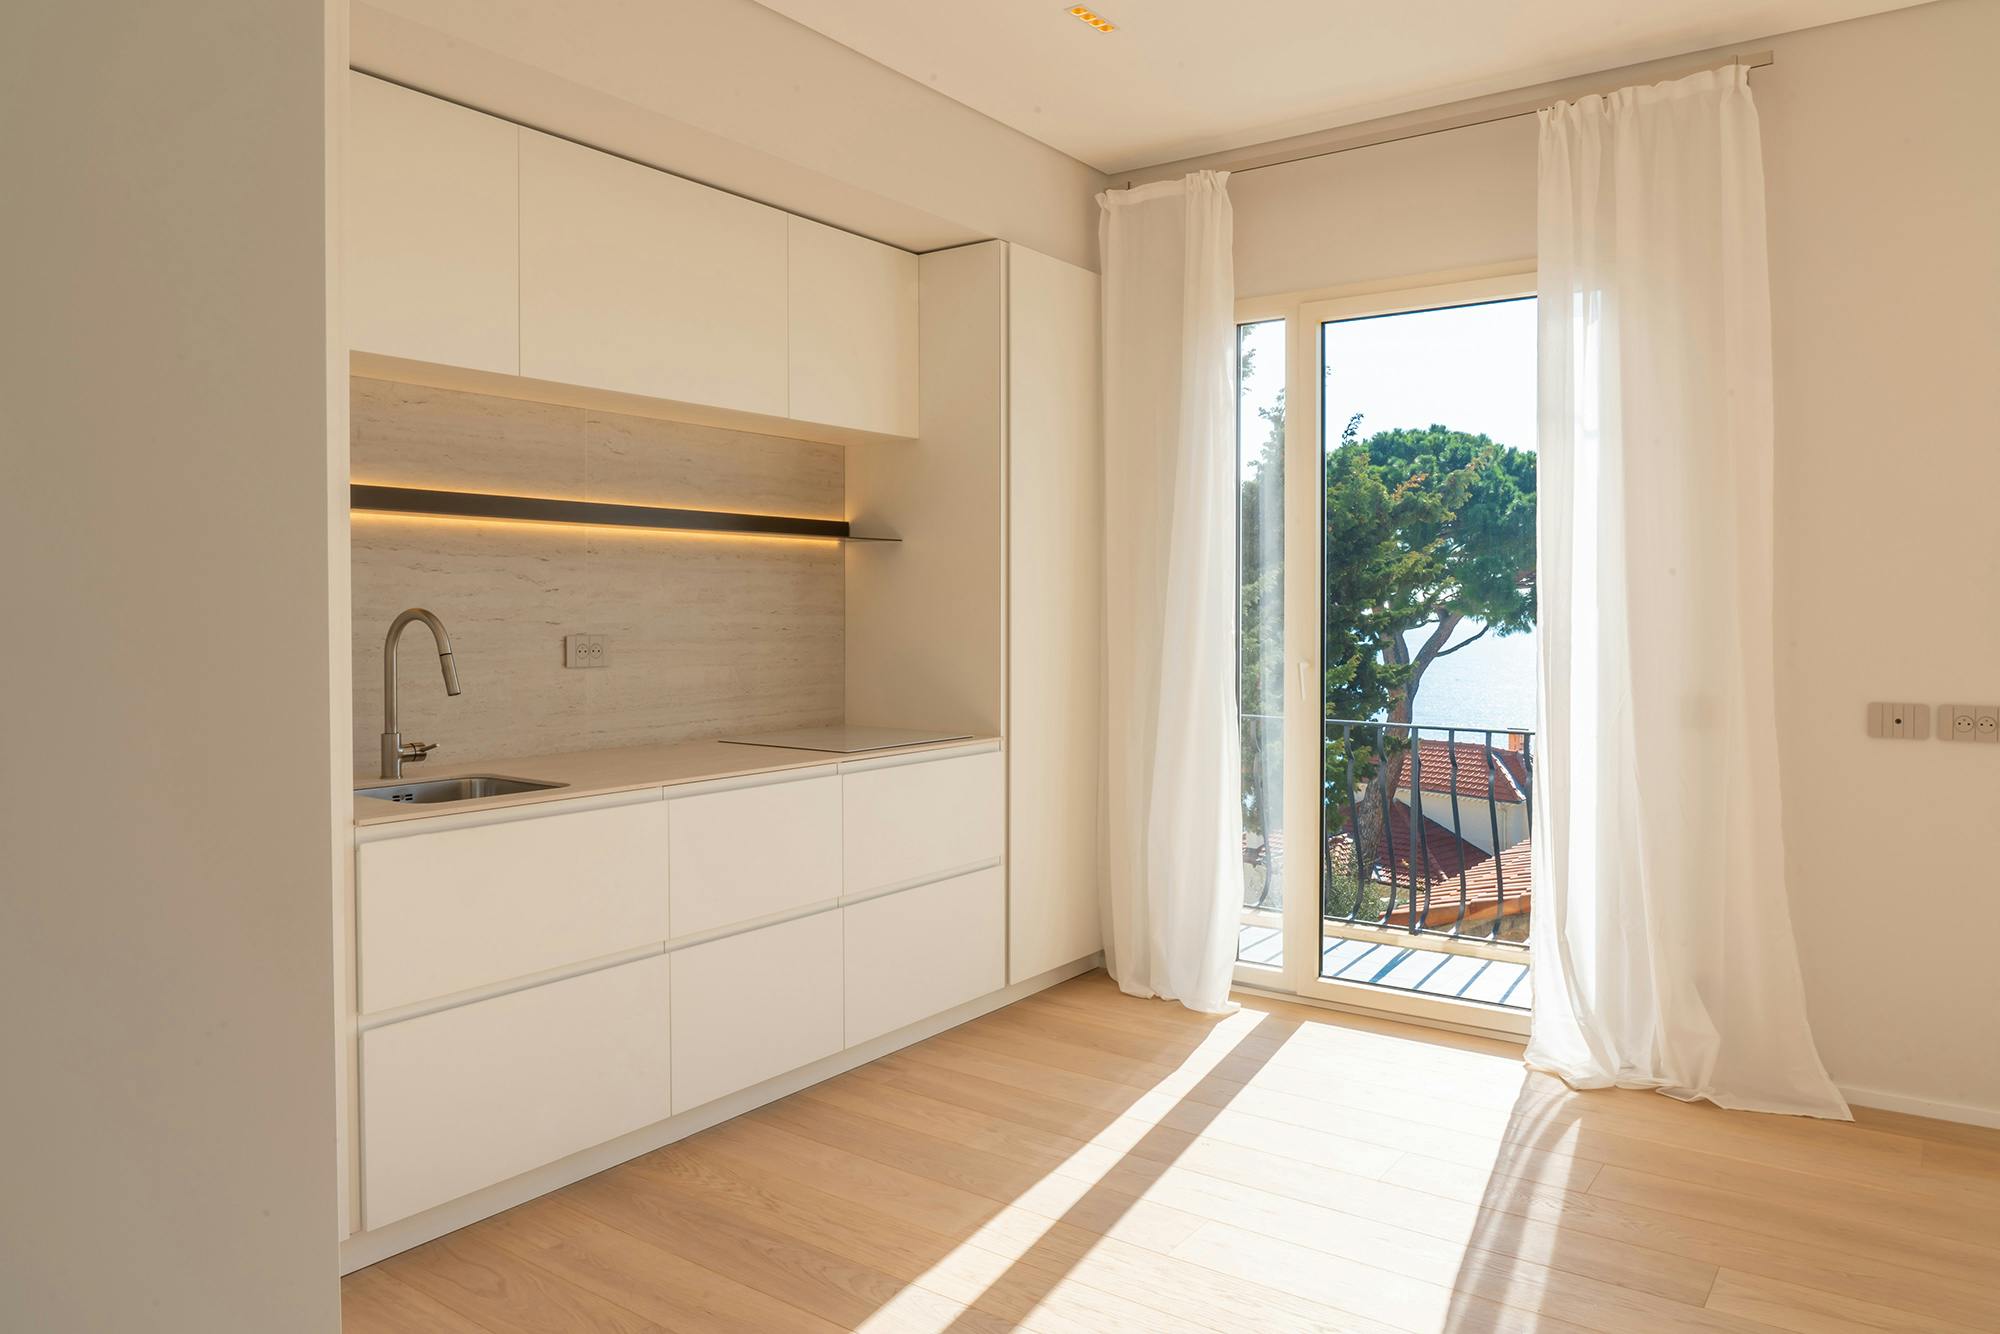 Numéro d'image 32 de la section actuelle de Une maison au minimalisme bien pensé grâce à Dekton (DTKN) Pietra Kode de Cosentino France